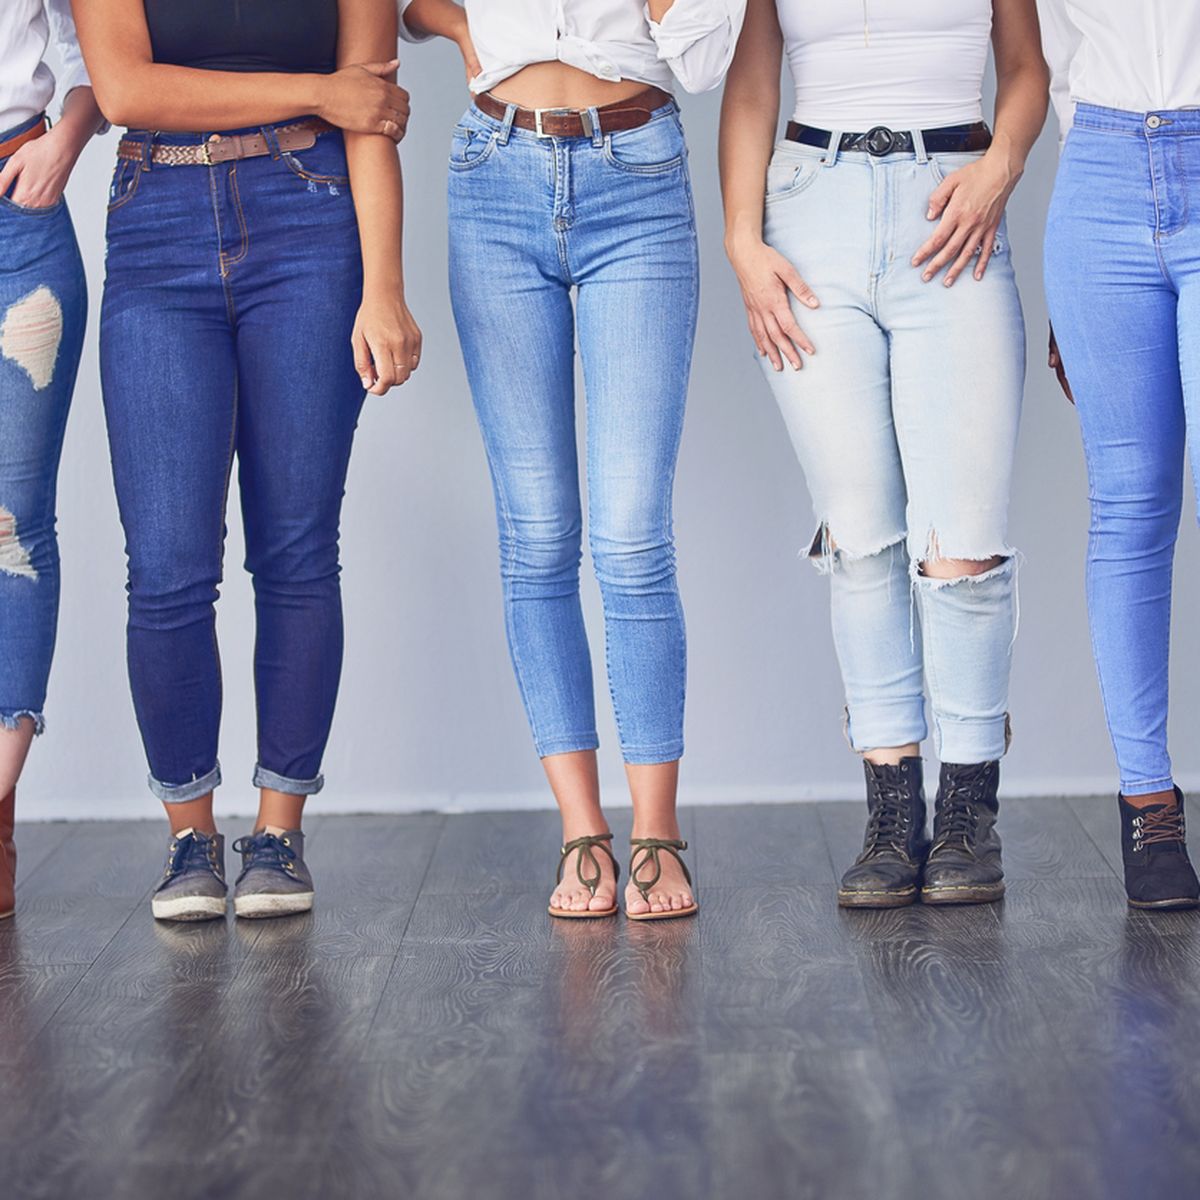 Jeans-Trends: Das sind 2020 fünf Jeans-Neuheiten wichtigsten die für